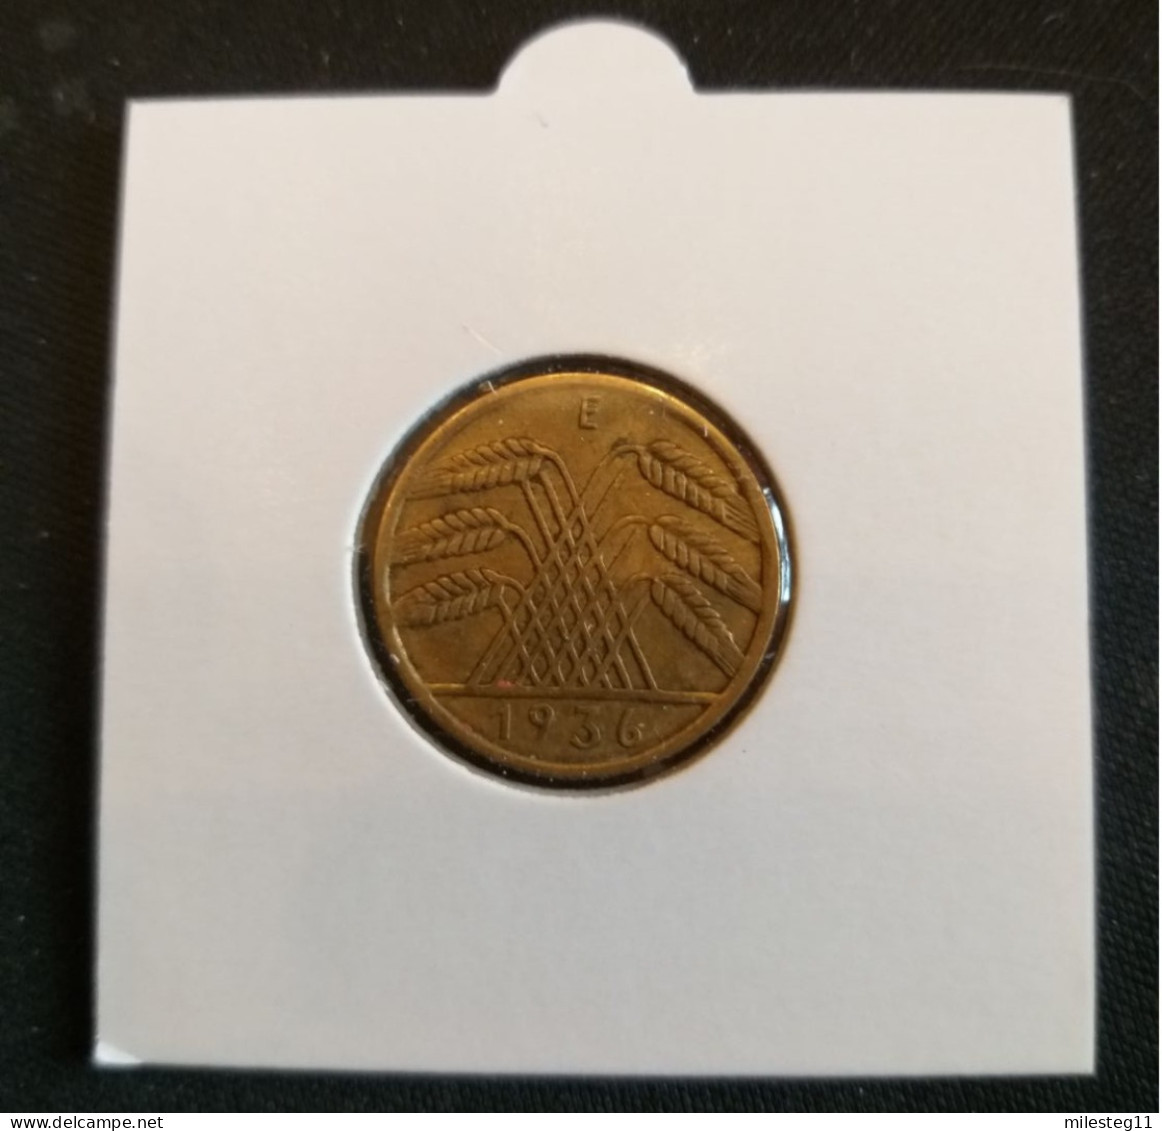 Pièce De 10 Reichspfennig De 1936E (Muldenhütten) - 10 Reichspfennig